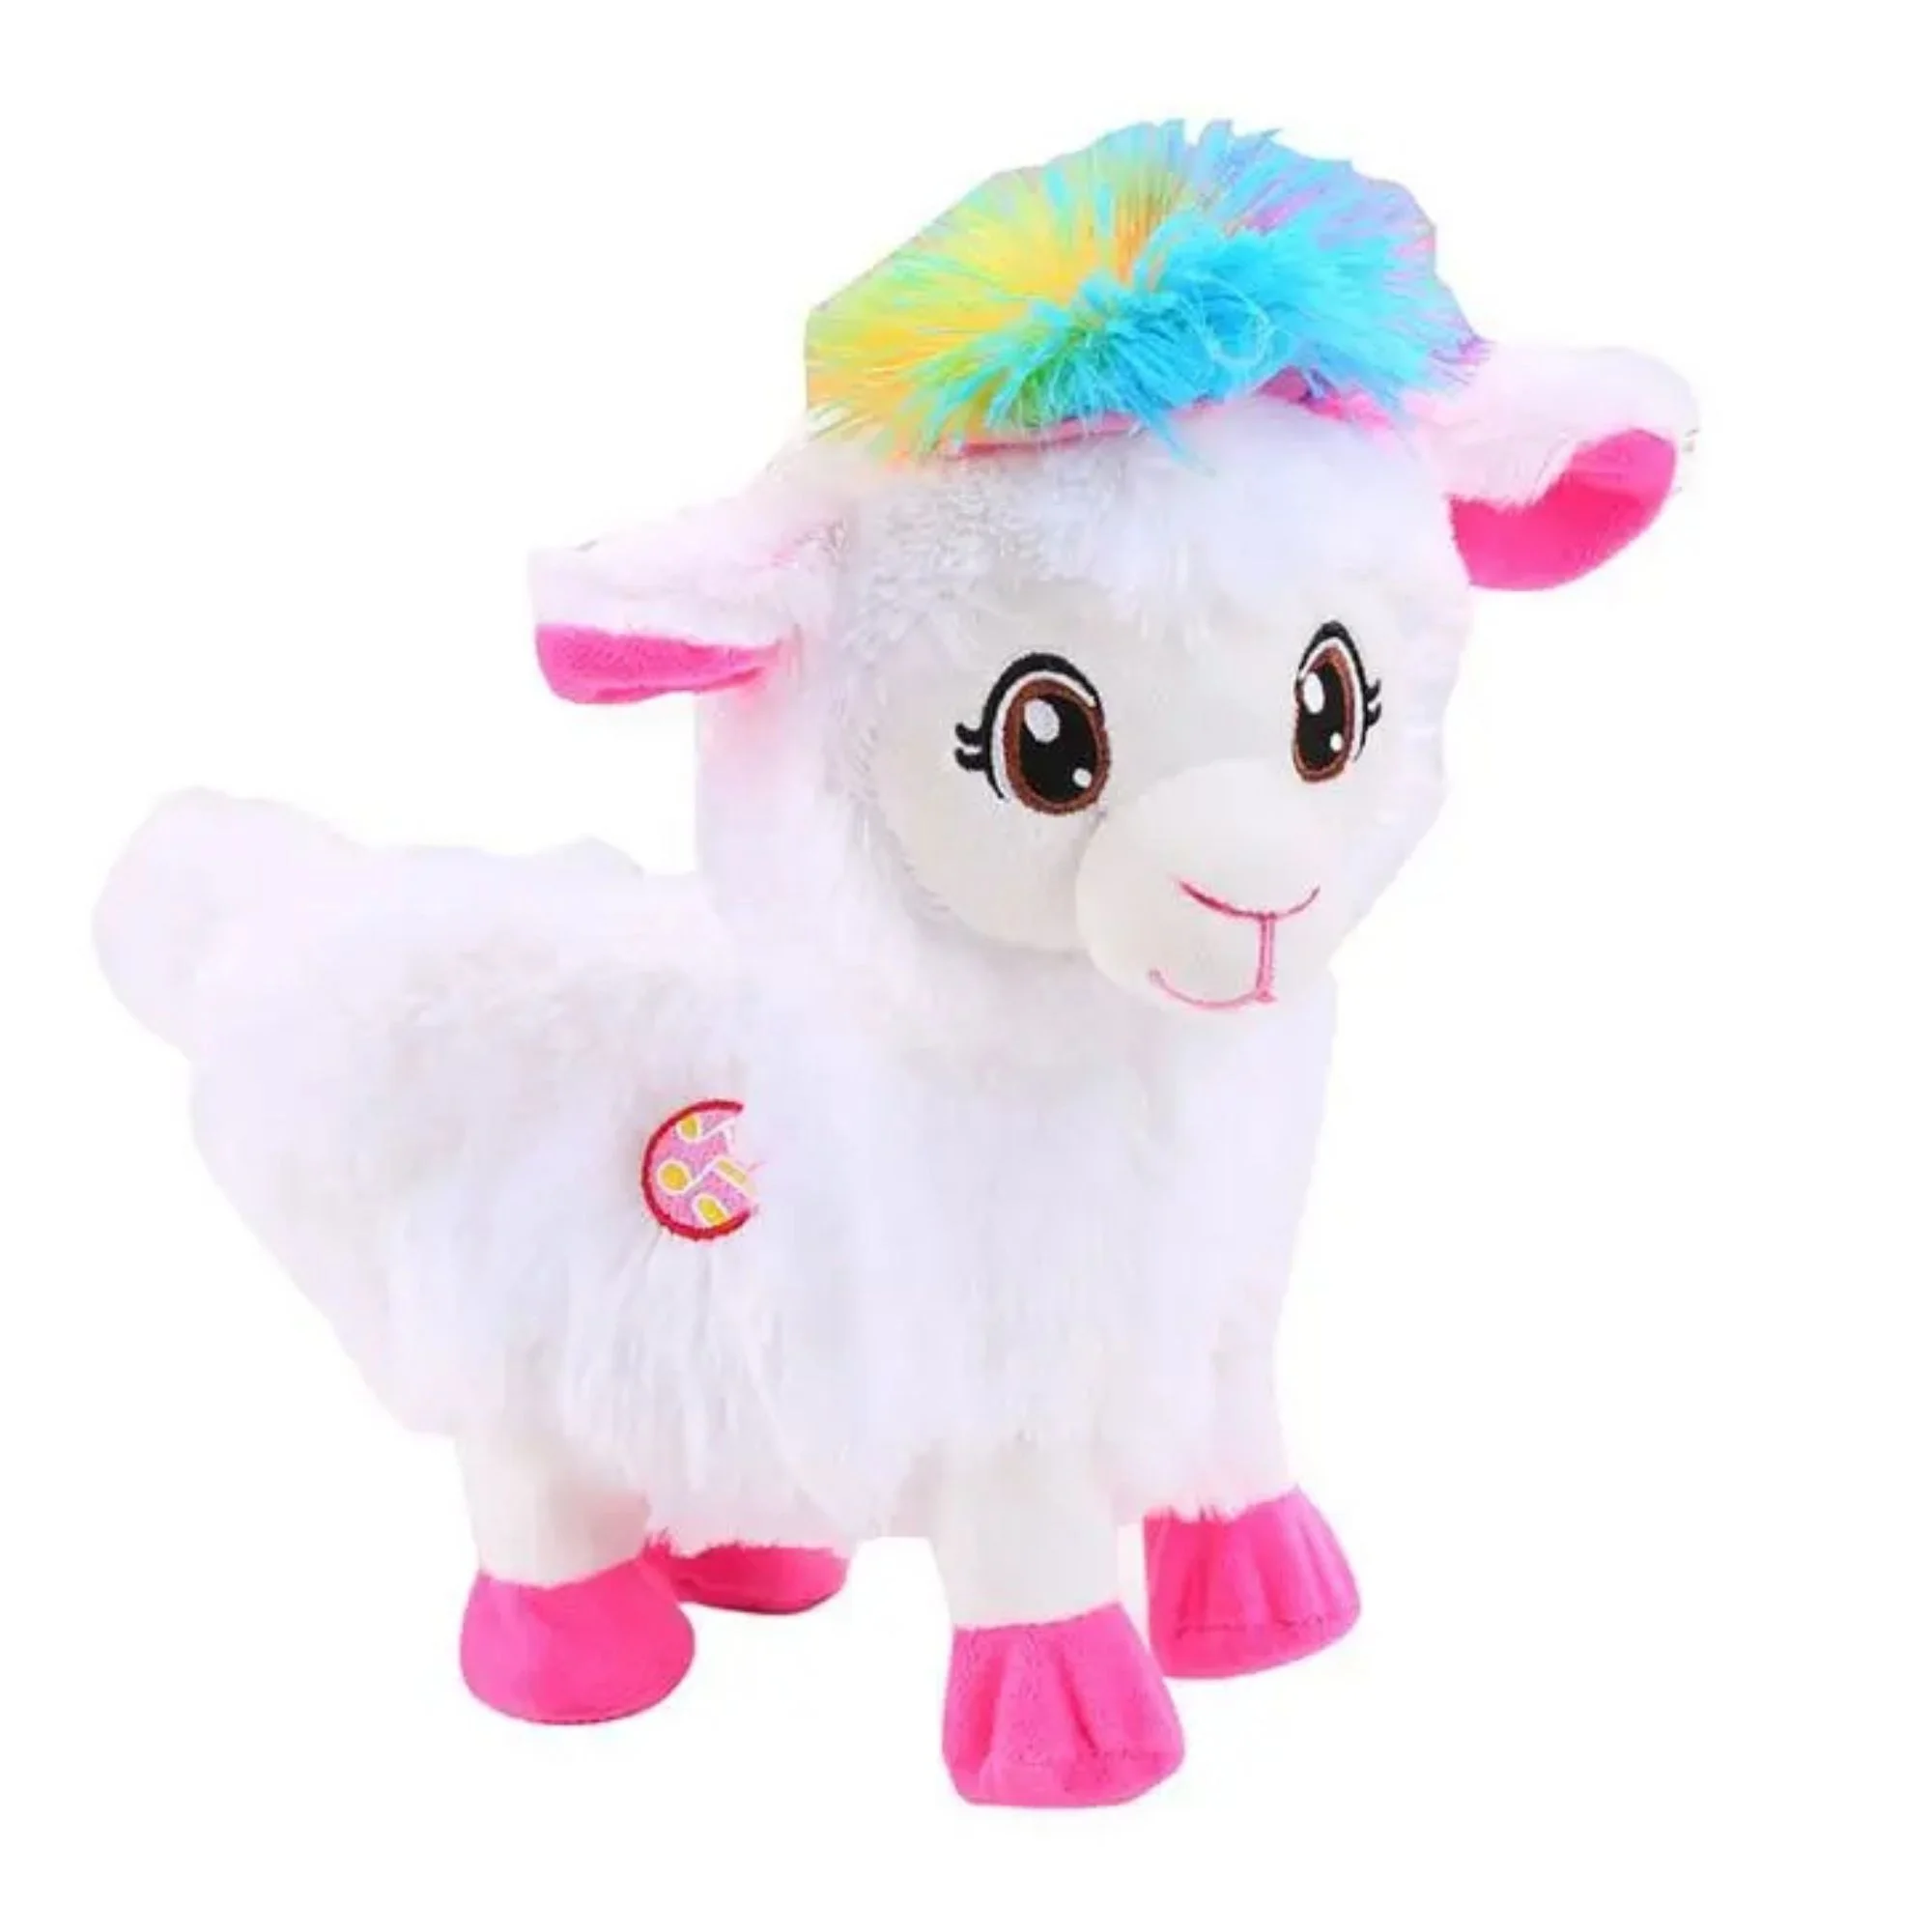 Yansiannv Promocional Toys Kawaii Stuffed Animal Toys Sheep Anime